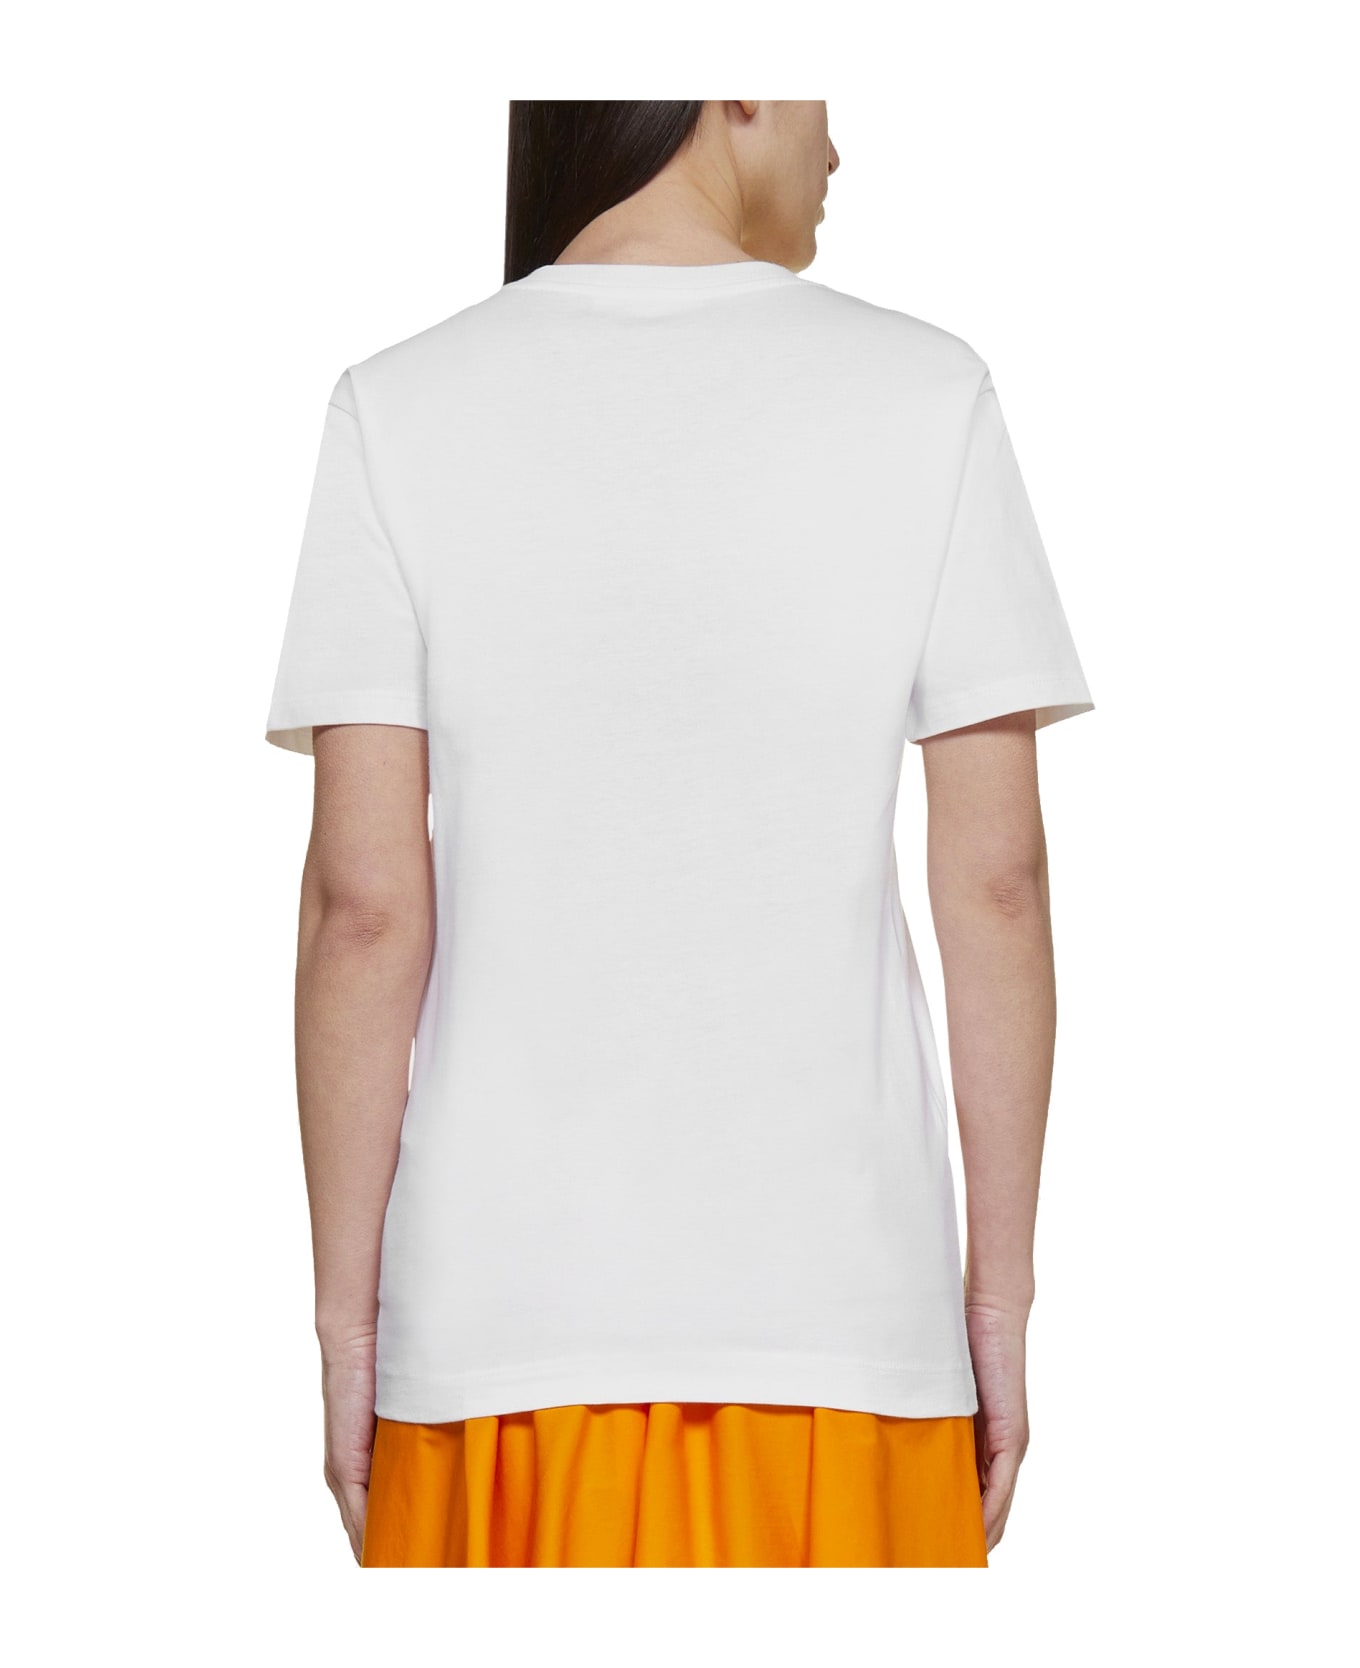 SportMax Zurlo T-shirt - White